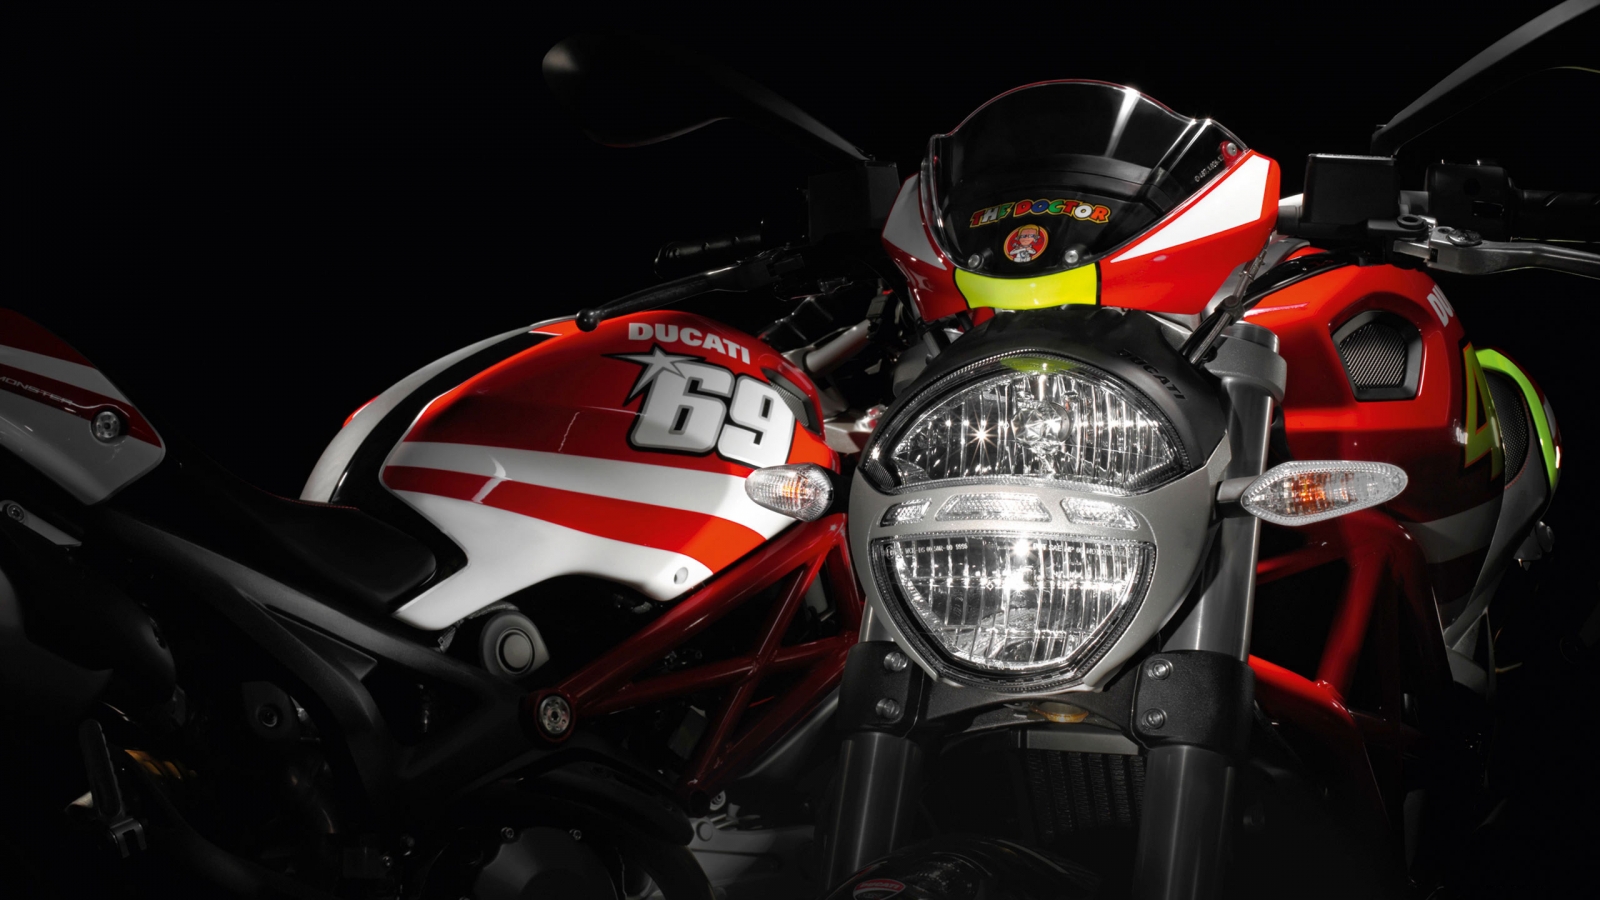 Ducati Rossi and Hayden Replica Ducati for 1600 x 900 HDTV resolution